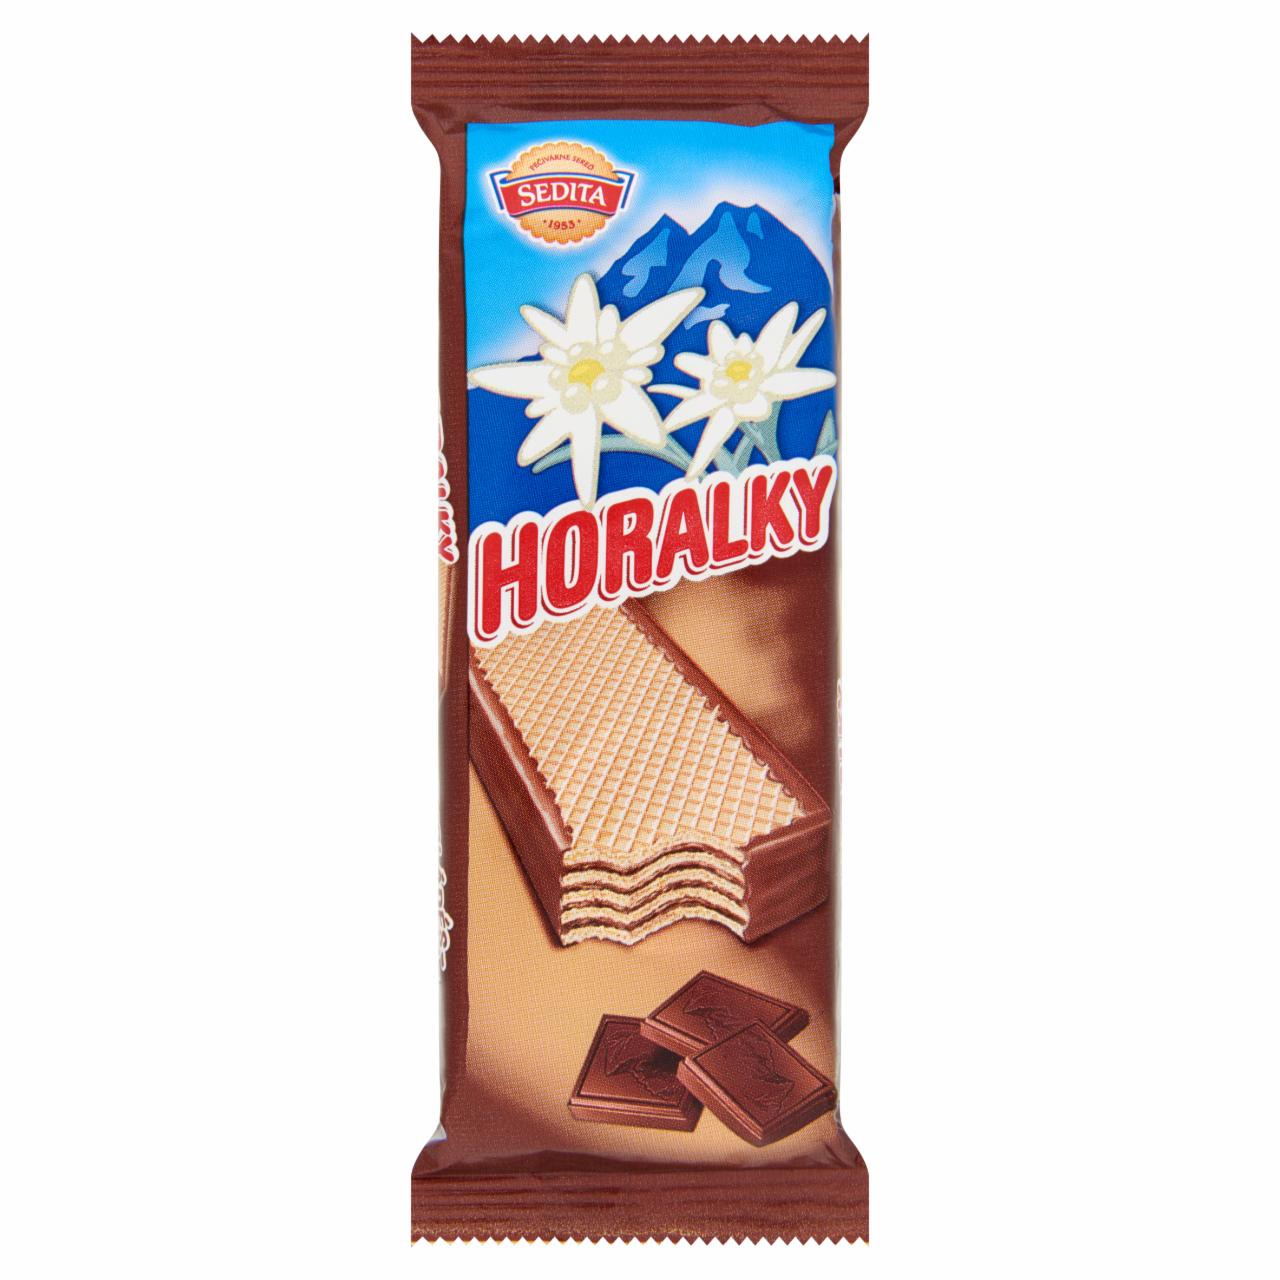 Képek - Horalky szélein kakaós bevonatba mártott, kakaós-csokoládés krémmel töltött ostyaszelet 50 g